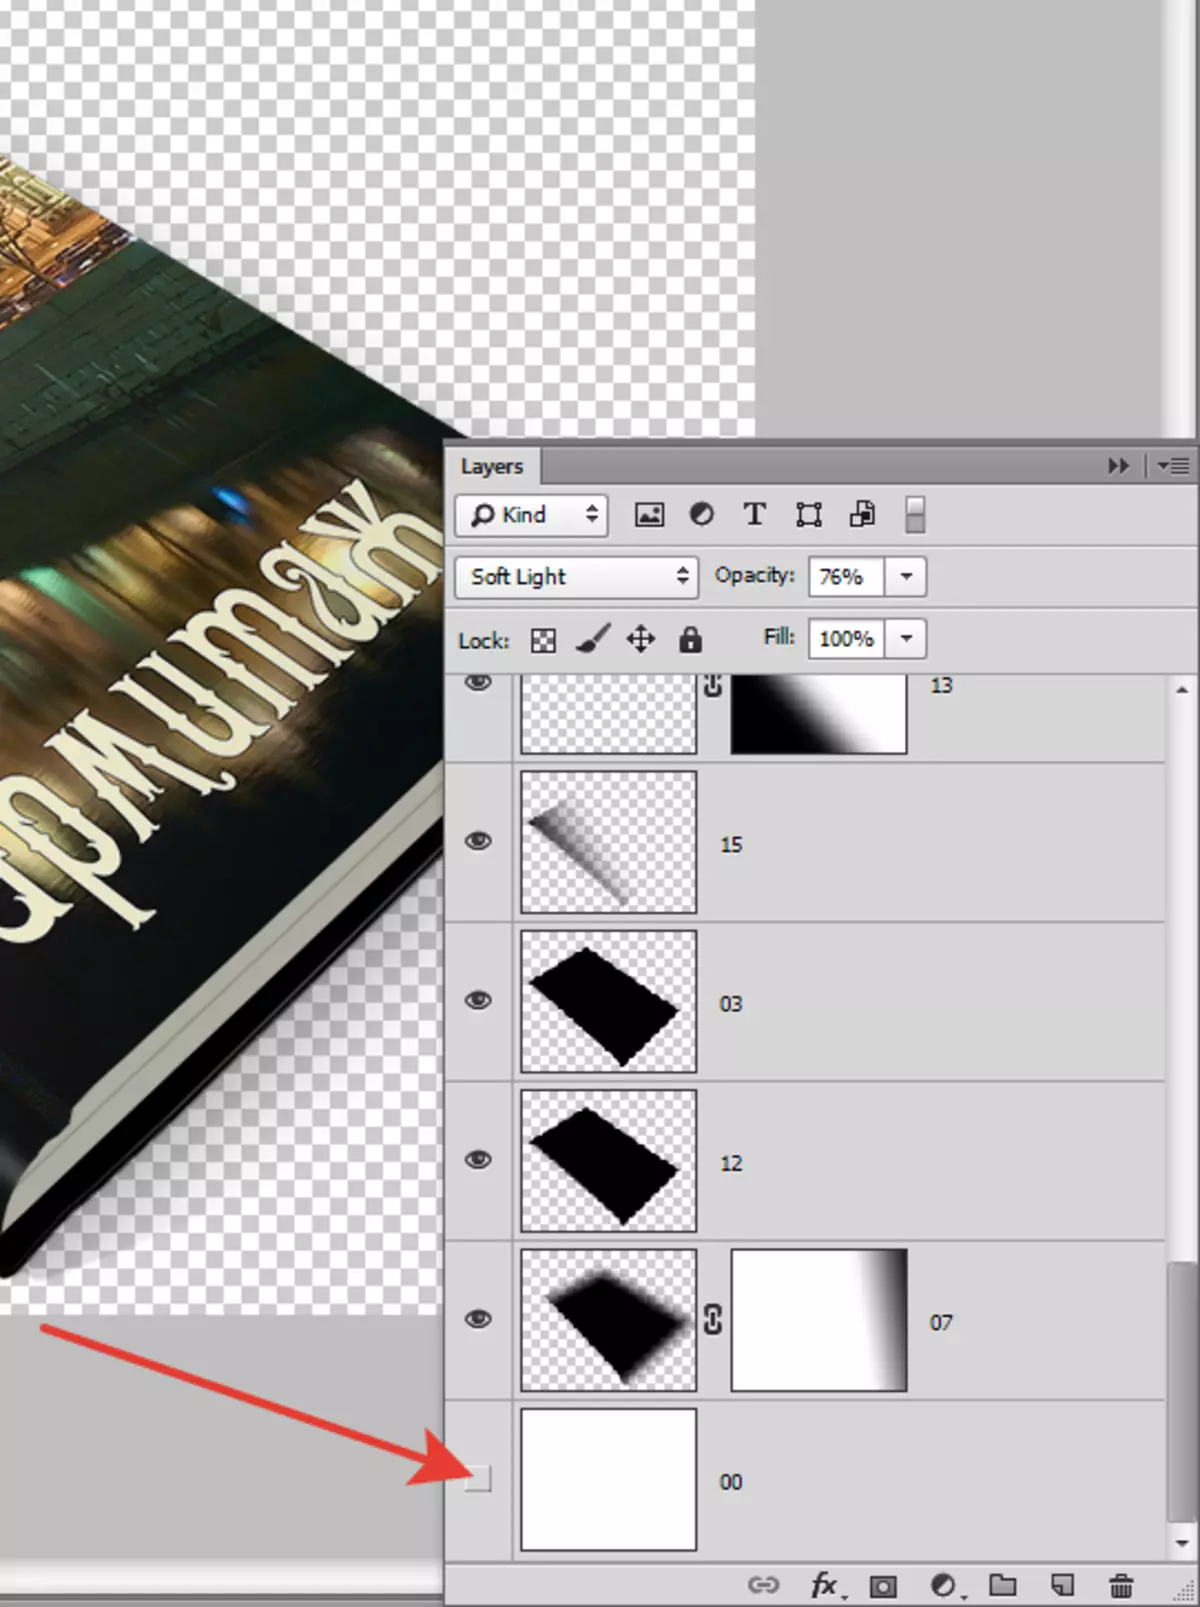 Erstellen Sie ein Cover für ein Buch in Photoshop